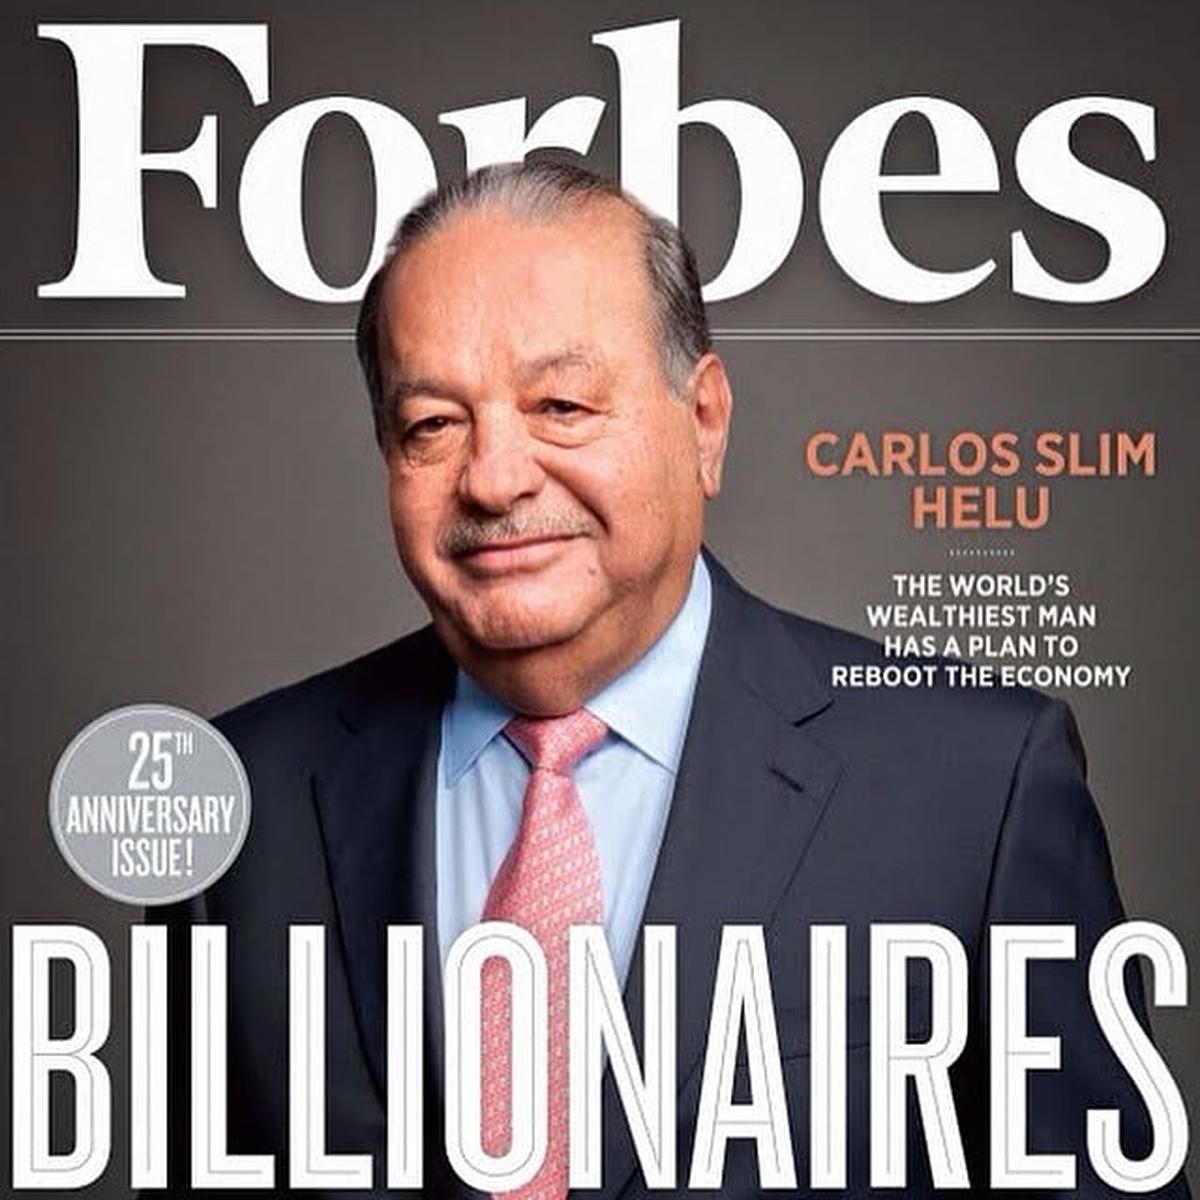  | Carlos Slim es considerado uno de los billonarios de México